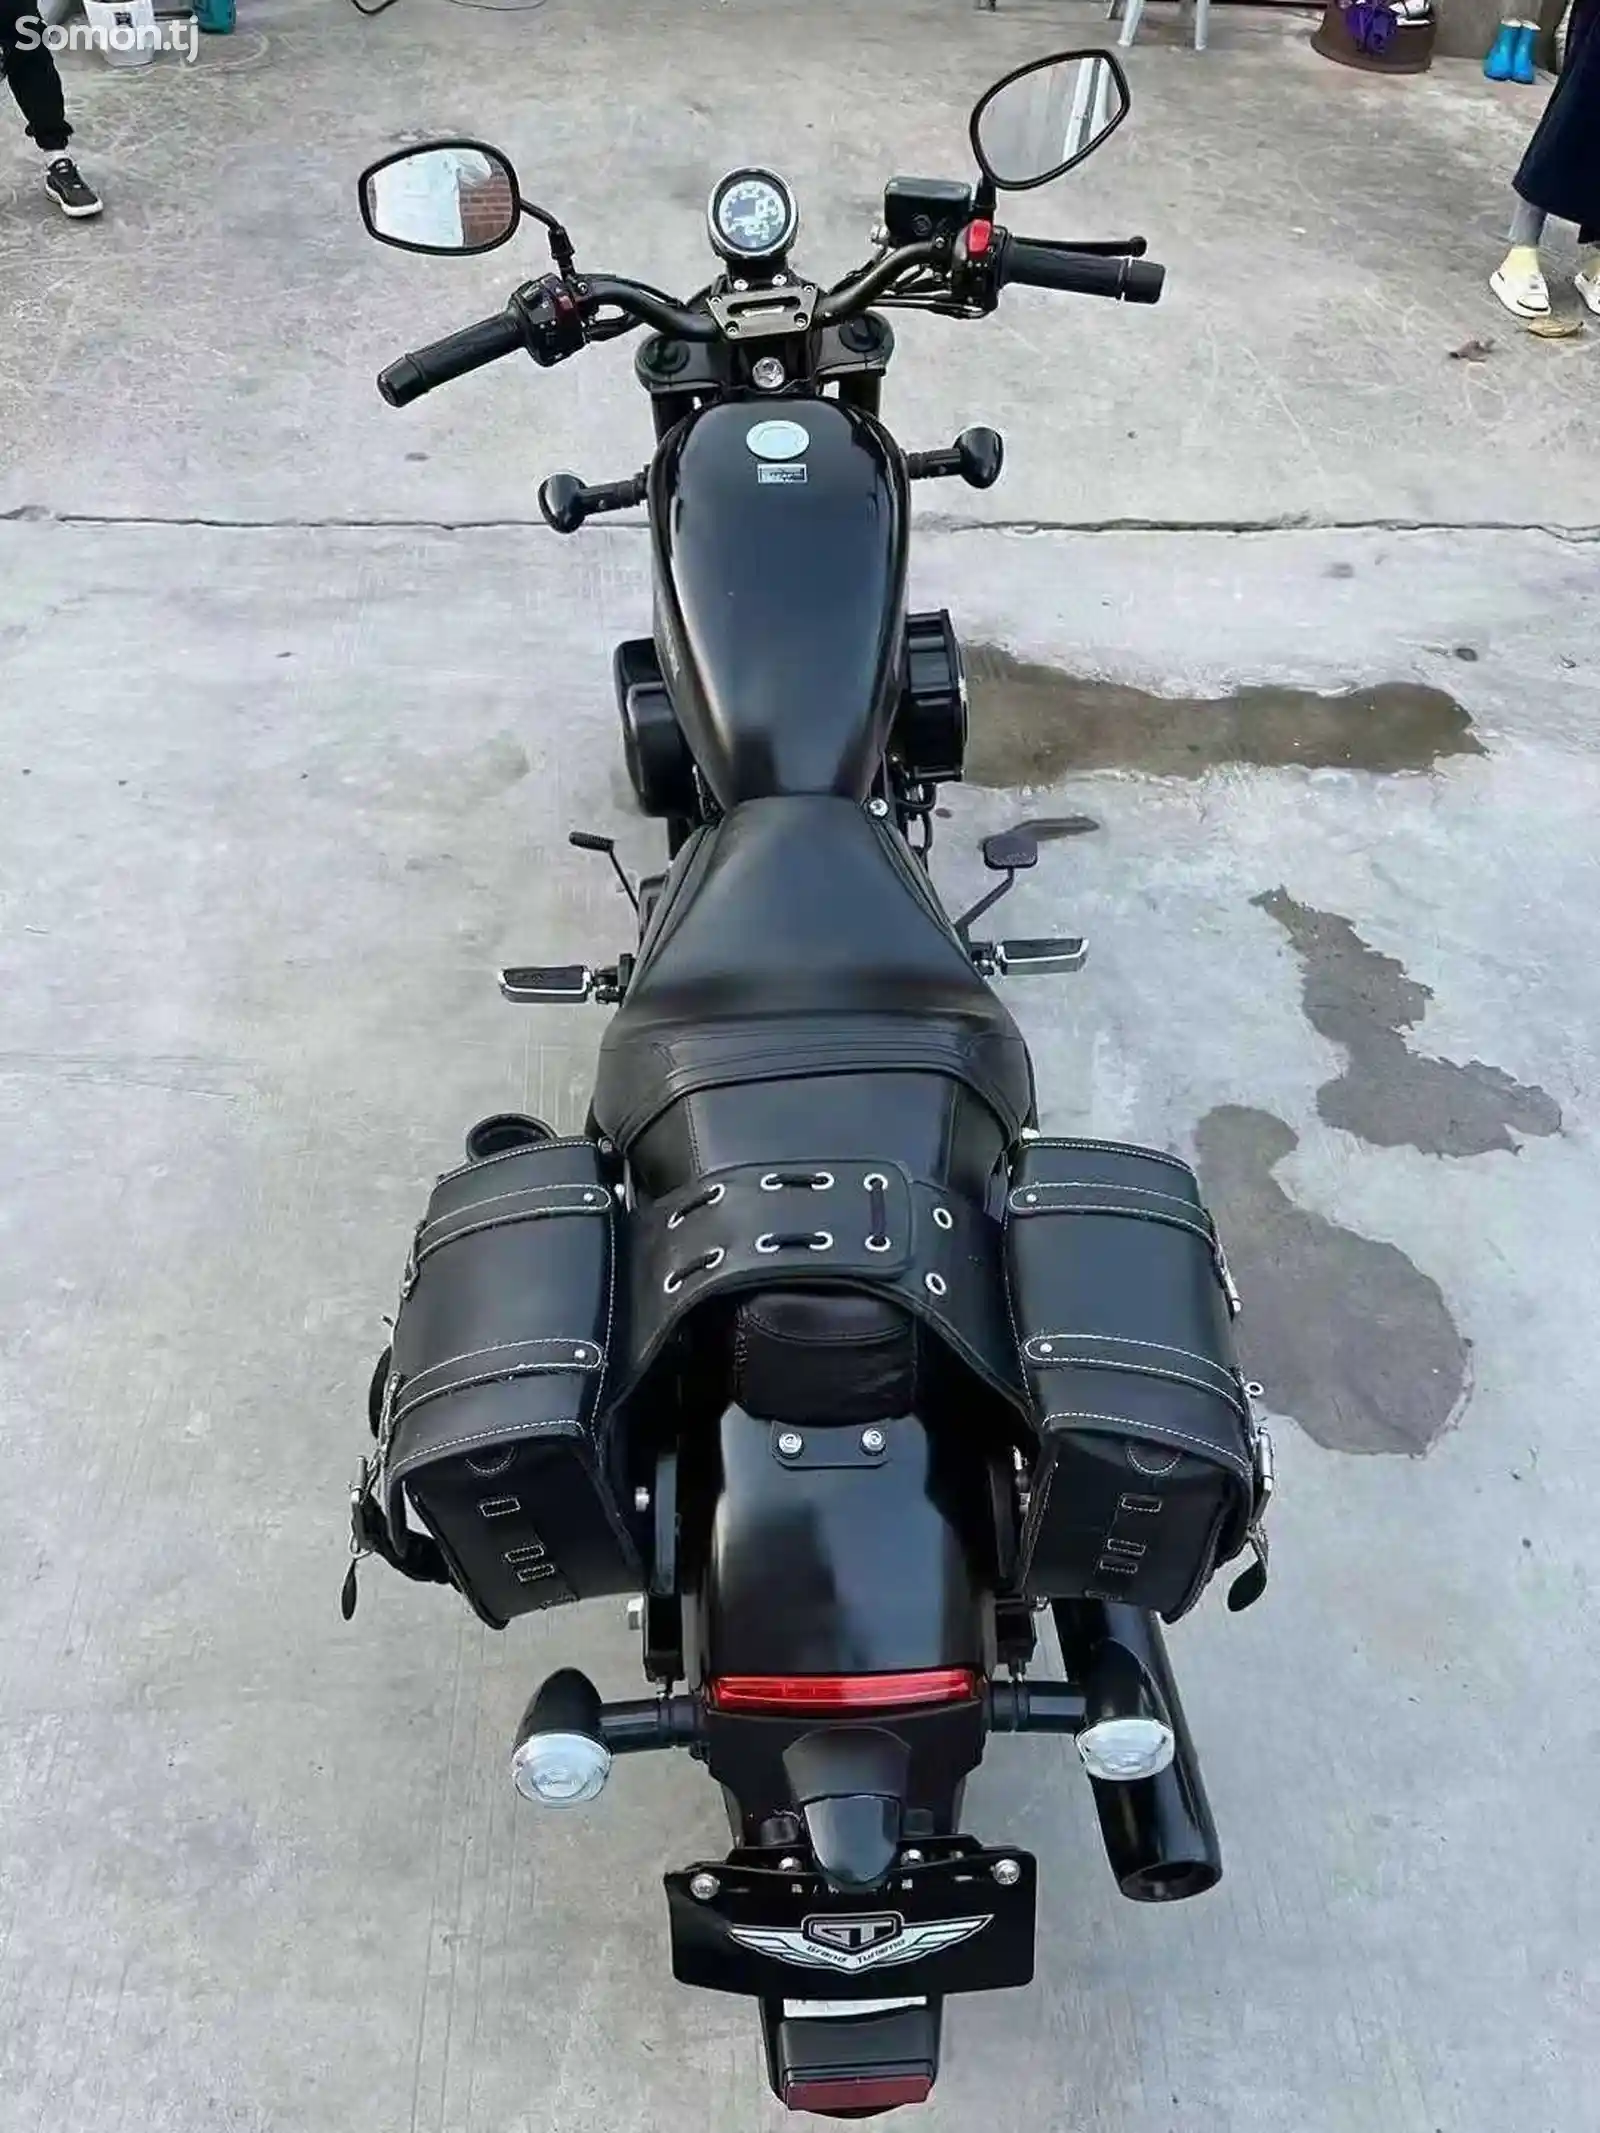 Мотоцикл Harley style 250cc на заказ-6